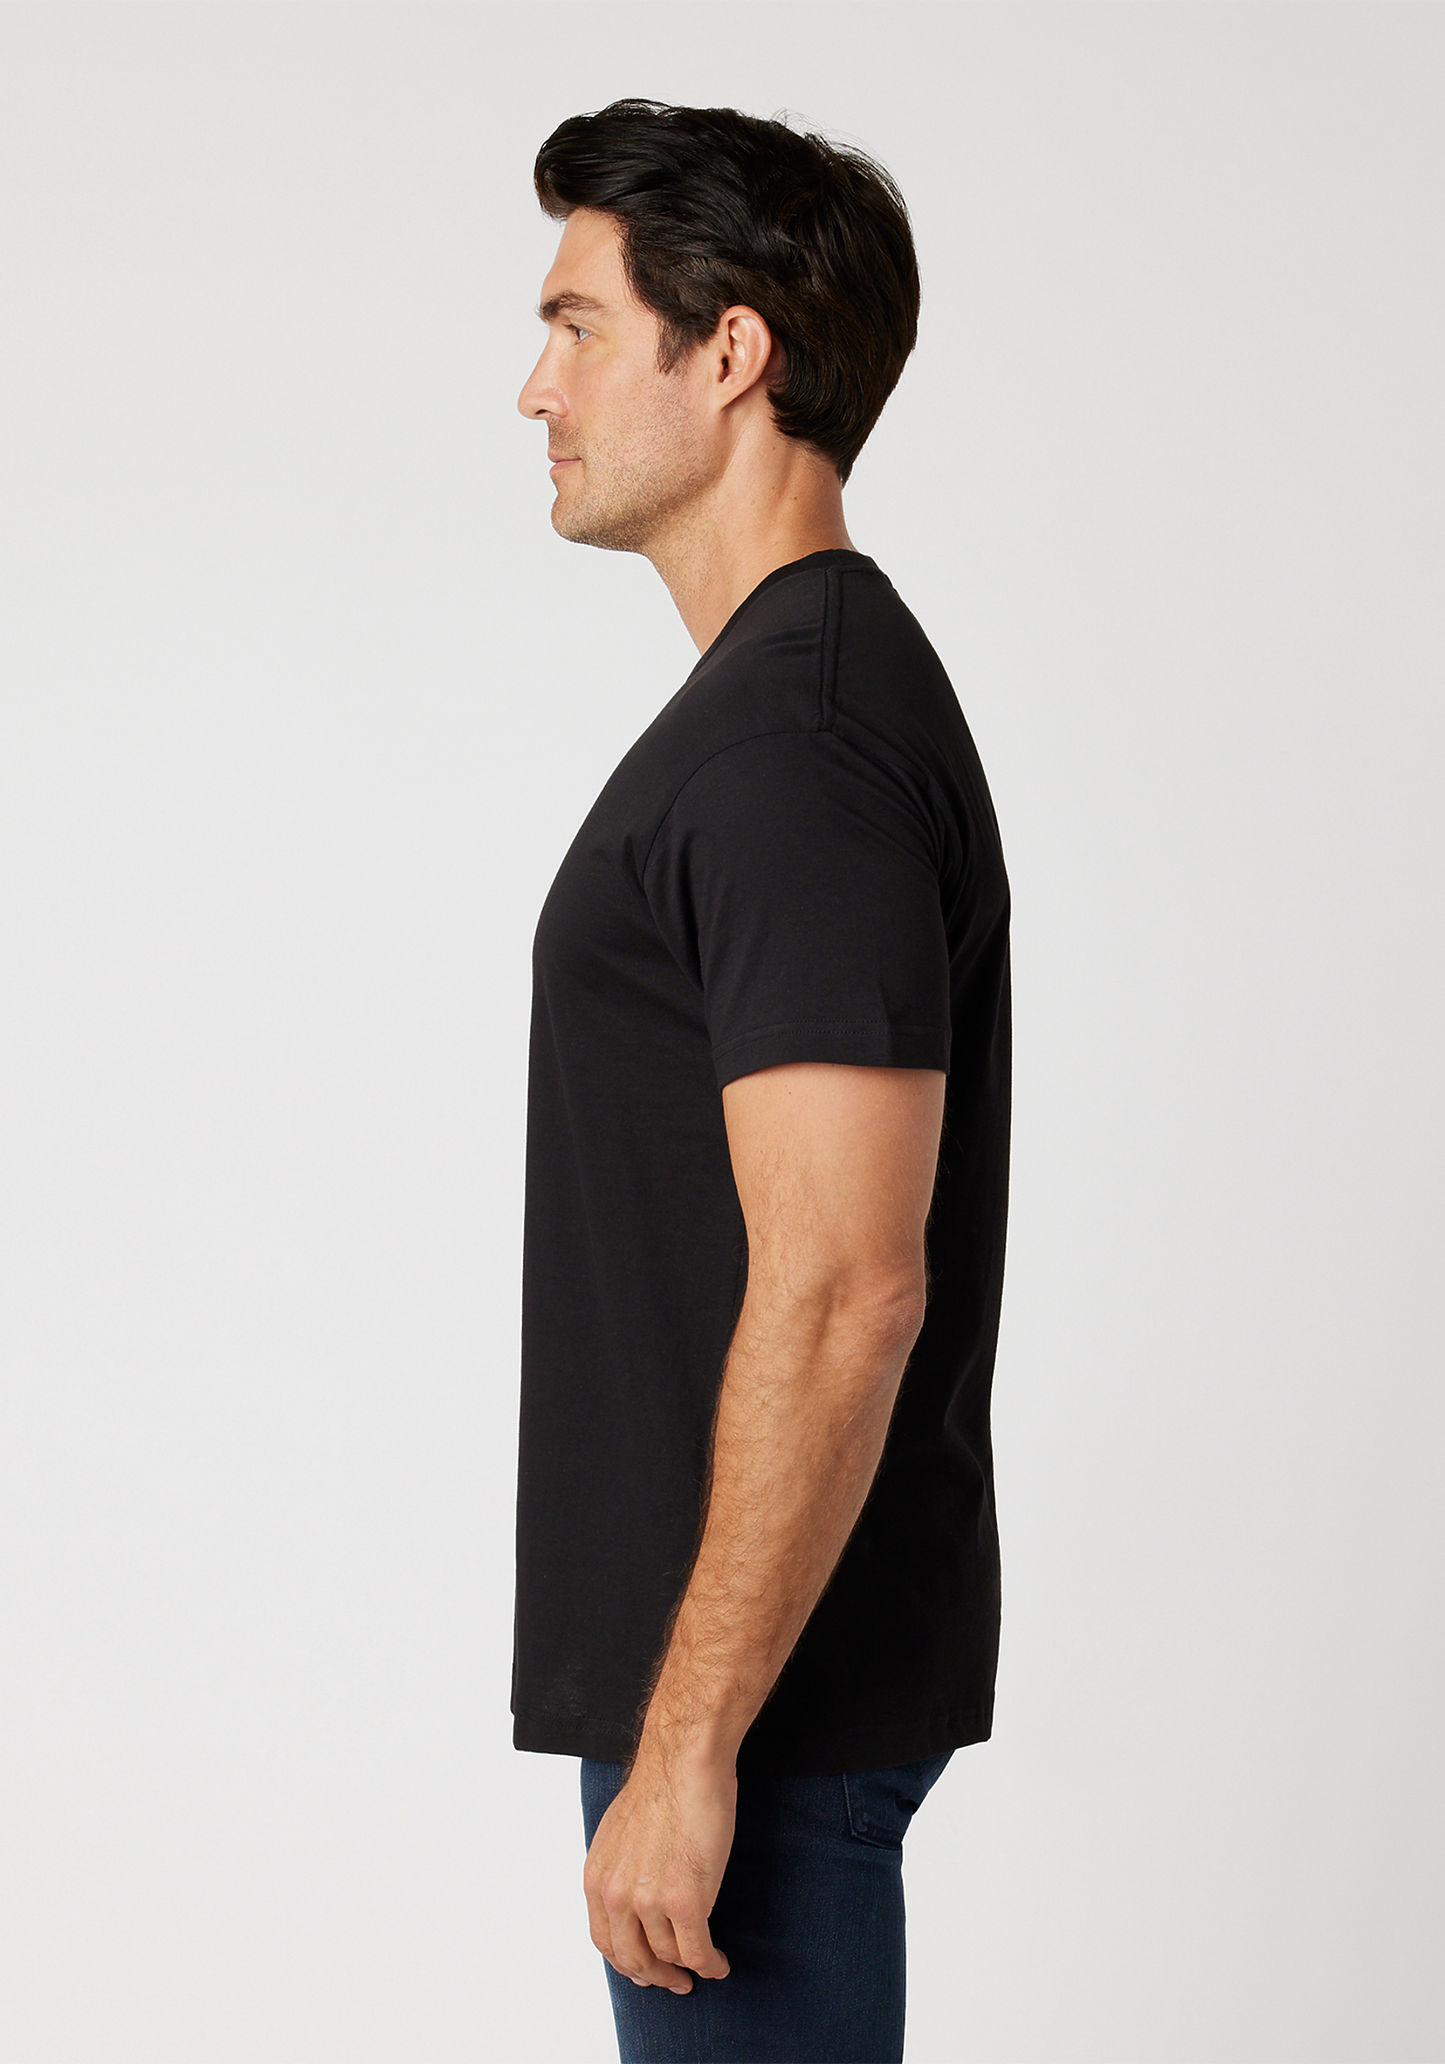 The Snore Face Unisex T-Shirt (Black)